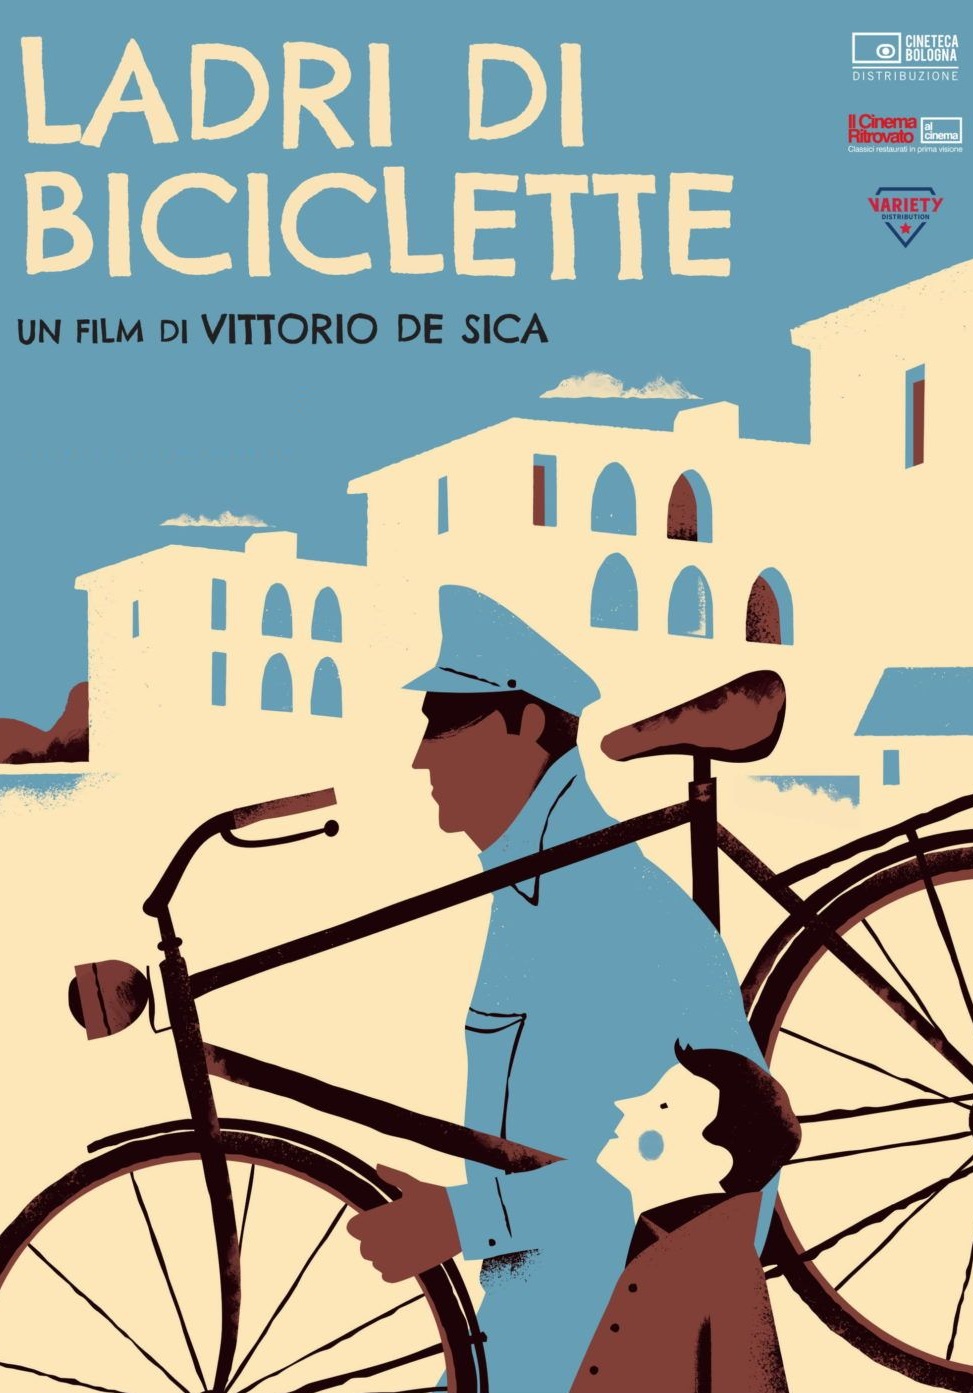 Ladri di biciclette [B/N] [HD] (1948)